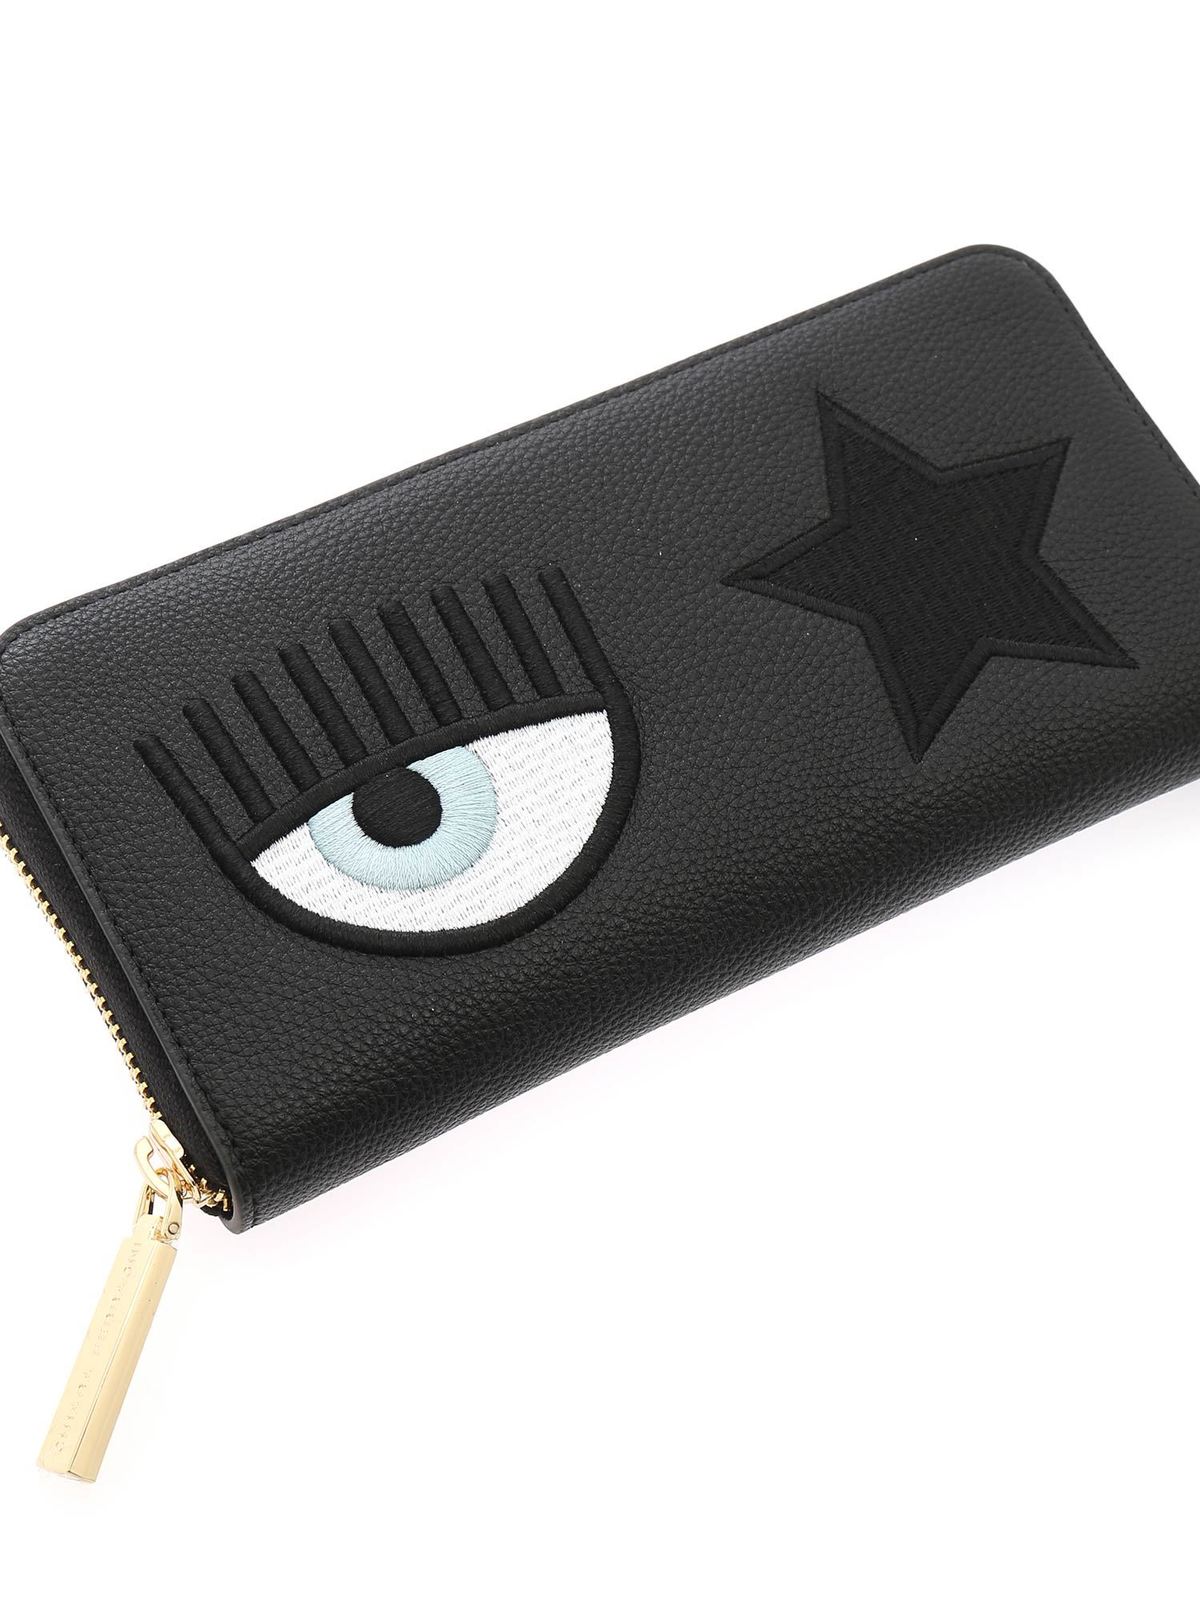 Wallets & purses Chiara Ferragni - Eye Star wallet in black